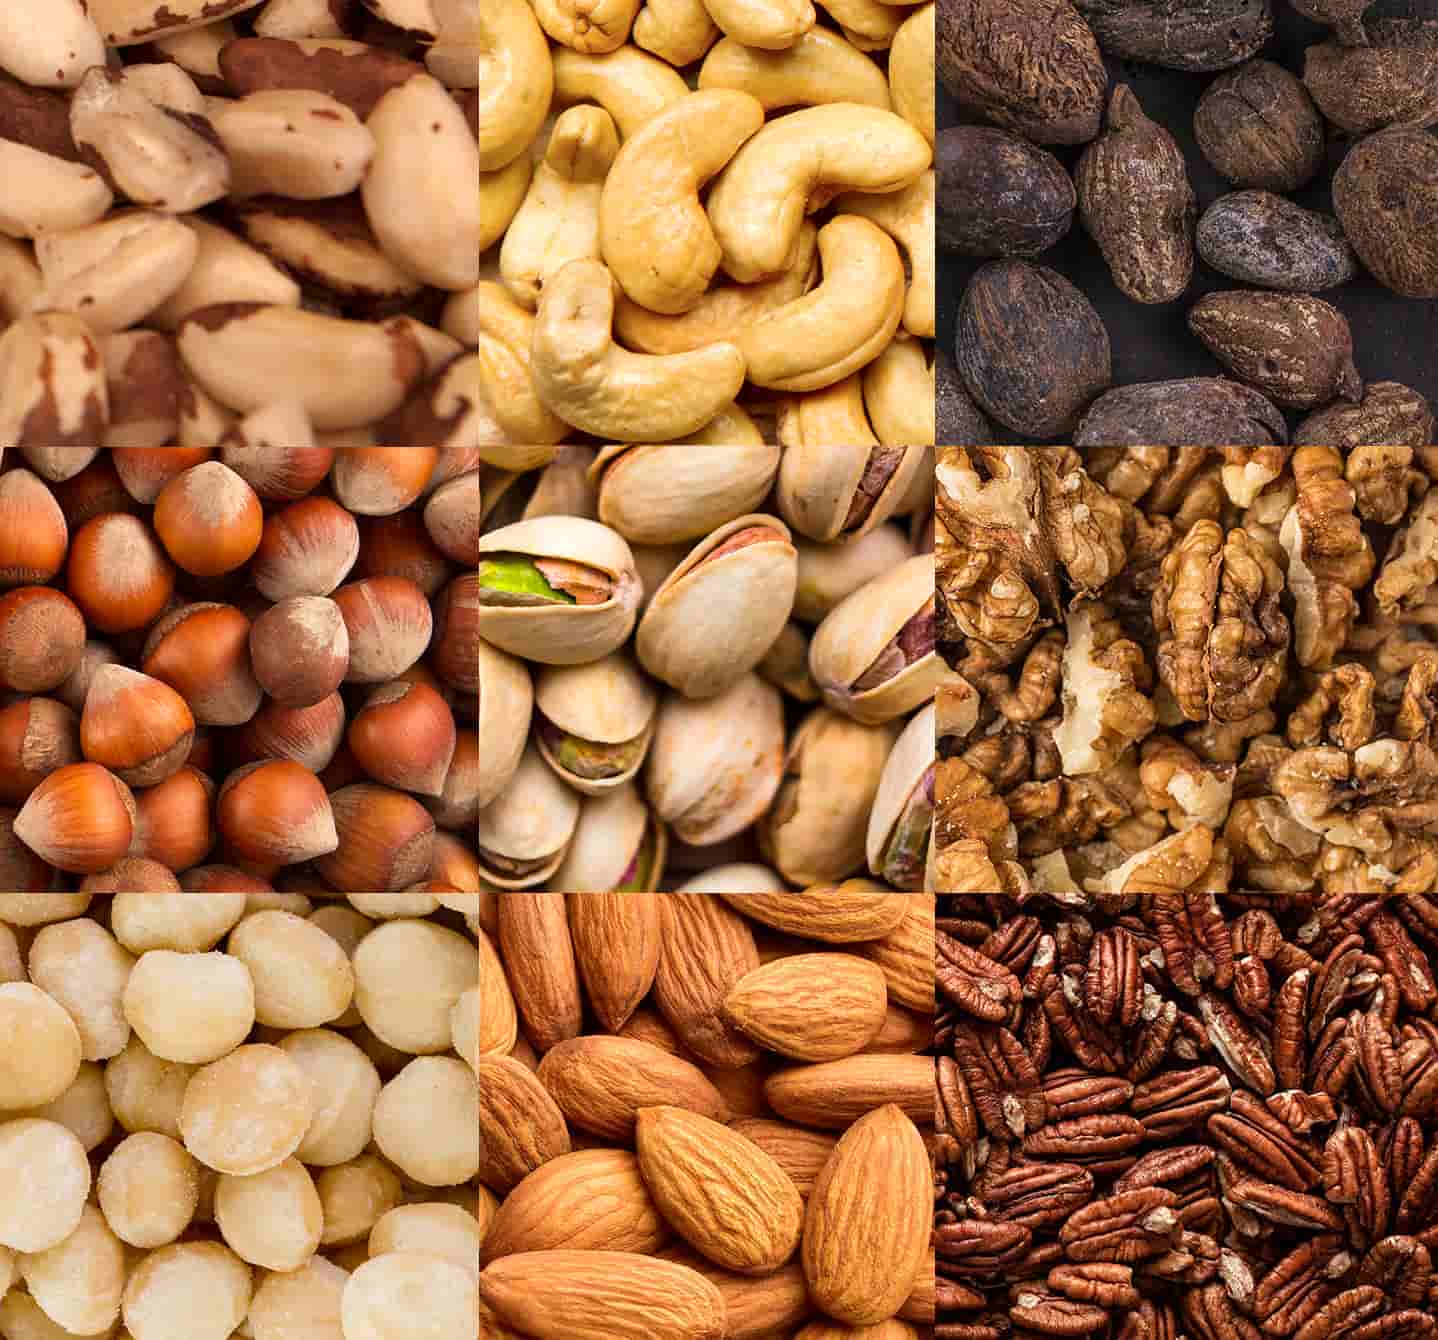 Nut allergy means peanut or tree nuts like almond, Brazil or macadamia nut, cashew, hazelnut, pecan, pistachio or walnut